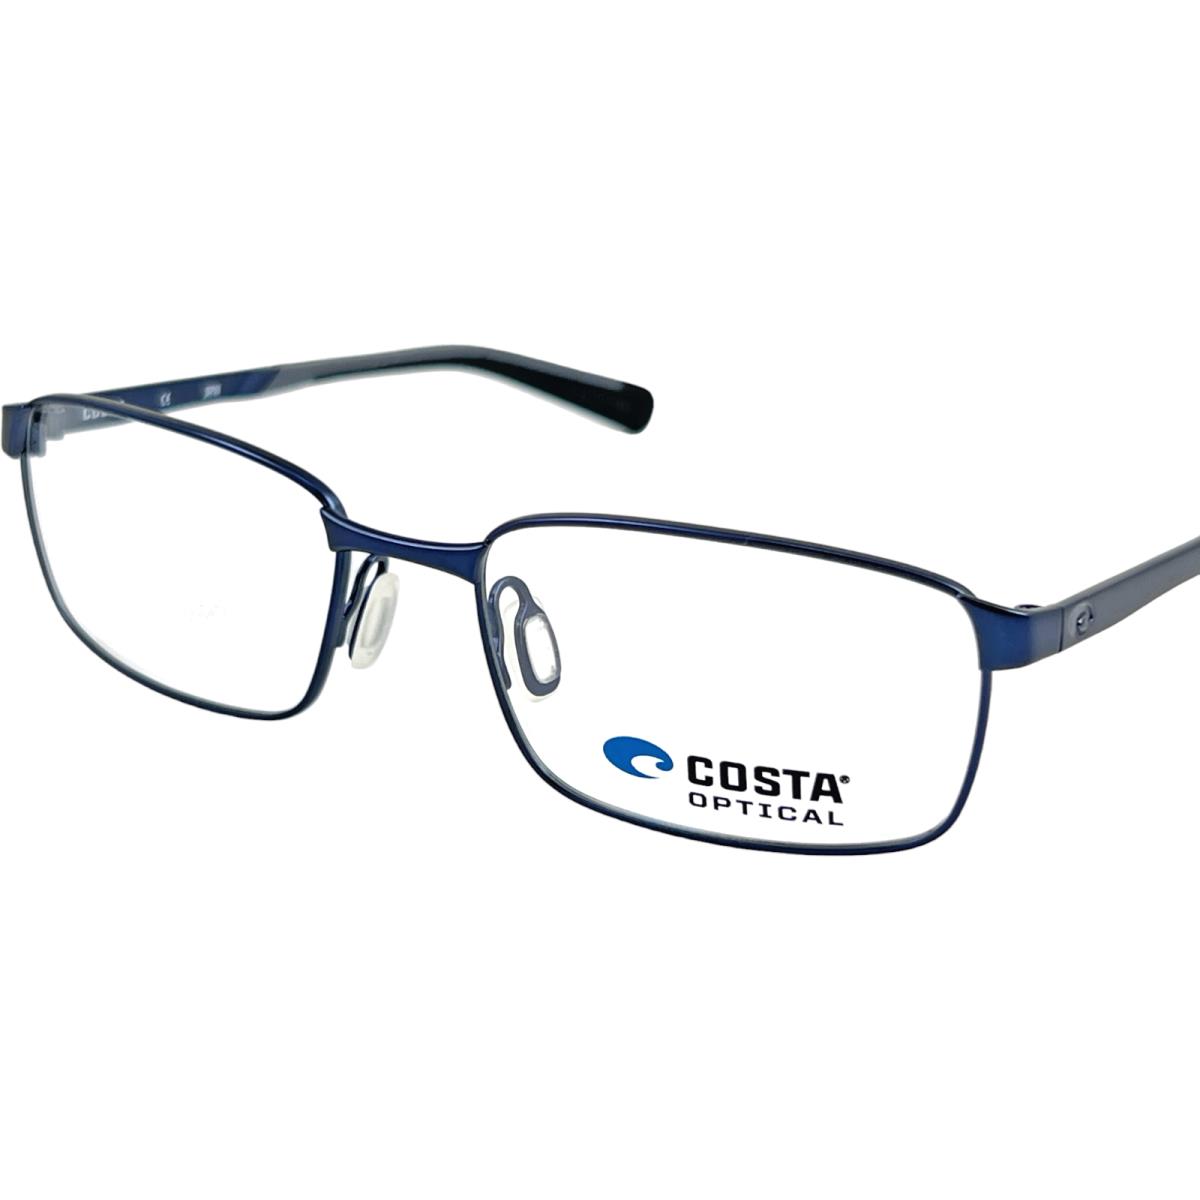 Costa BRD211 Bimini Road 211 Men`s Metal Eyeglass Frame 0457 Pacific Blue 57-18 - 0457 Pacific Blue, Frame: Blue